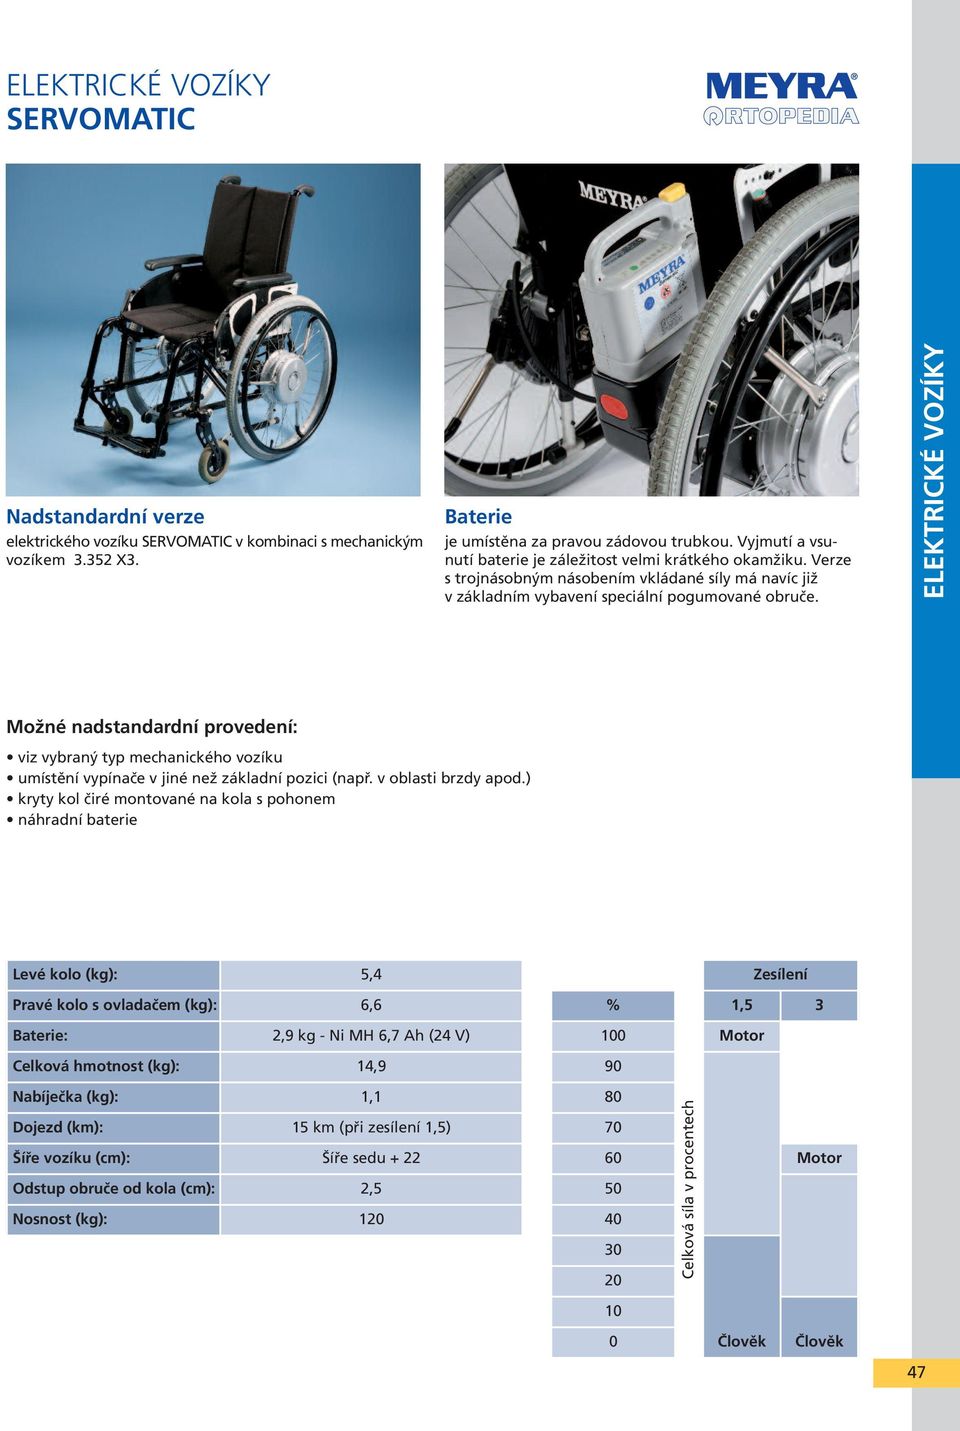 ELEKTRICKÉ VOZÍKY Možné nadstandardní provedení: viz vybraný typ mechanického vozíku umístění vypínače v jiné než základní pozici (např. v oblasti brzdy apod.